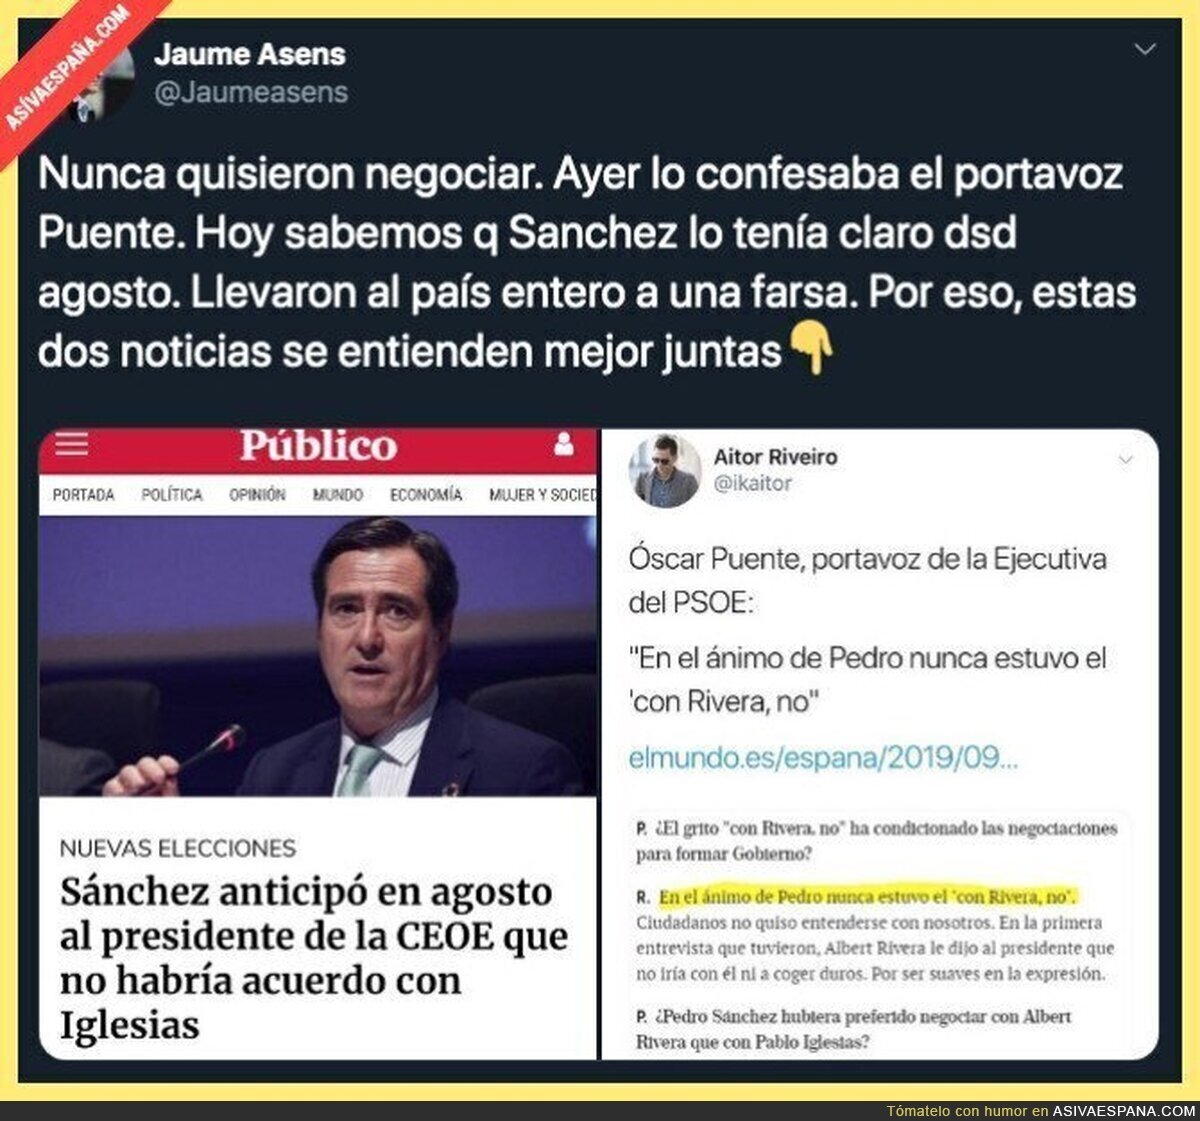 Pedro Sánchez nunca ha querido negociar